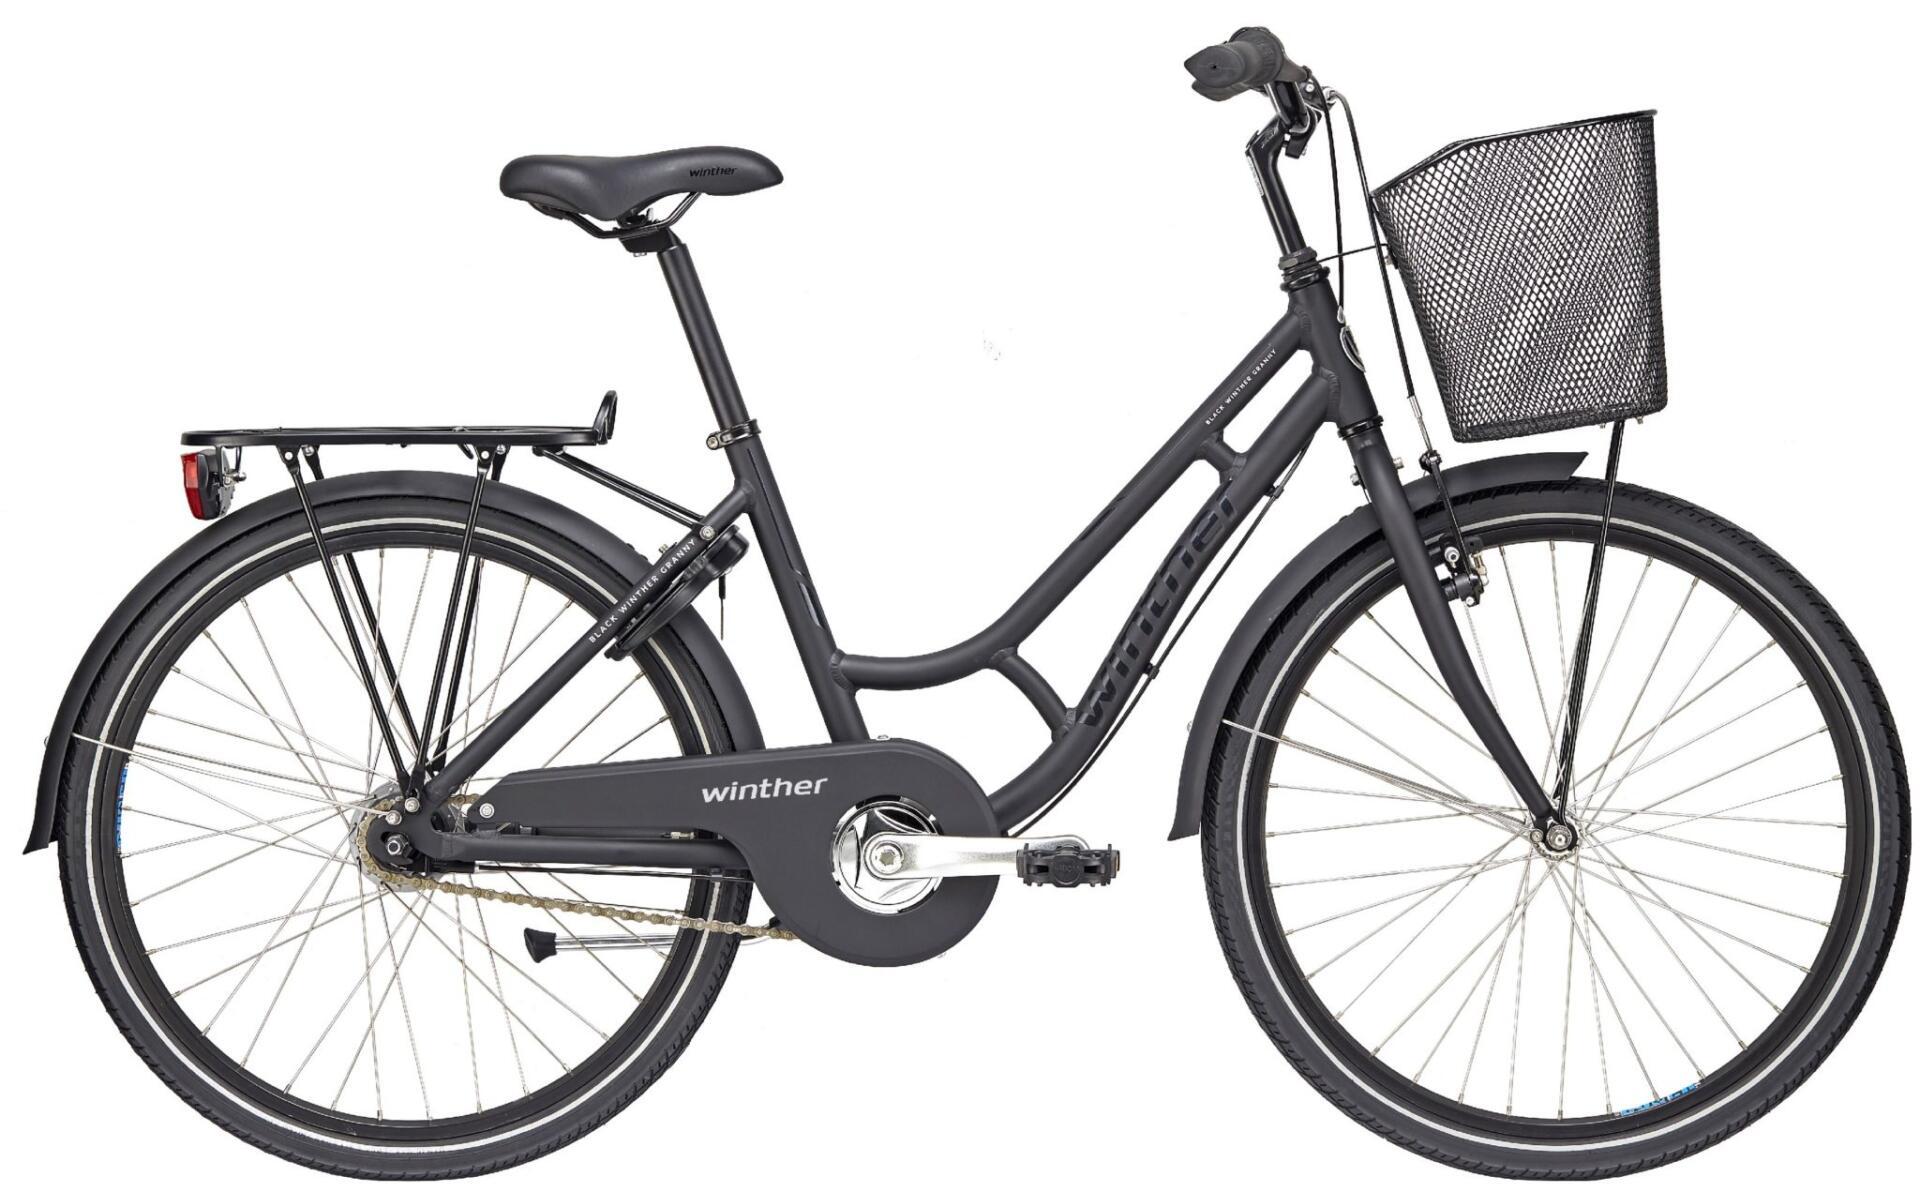 Særlig rapport støj Winther cykler – Køb din nye Winther cykel eller Winther elcykel